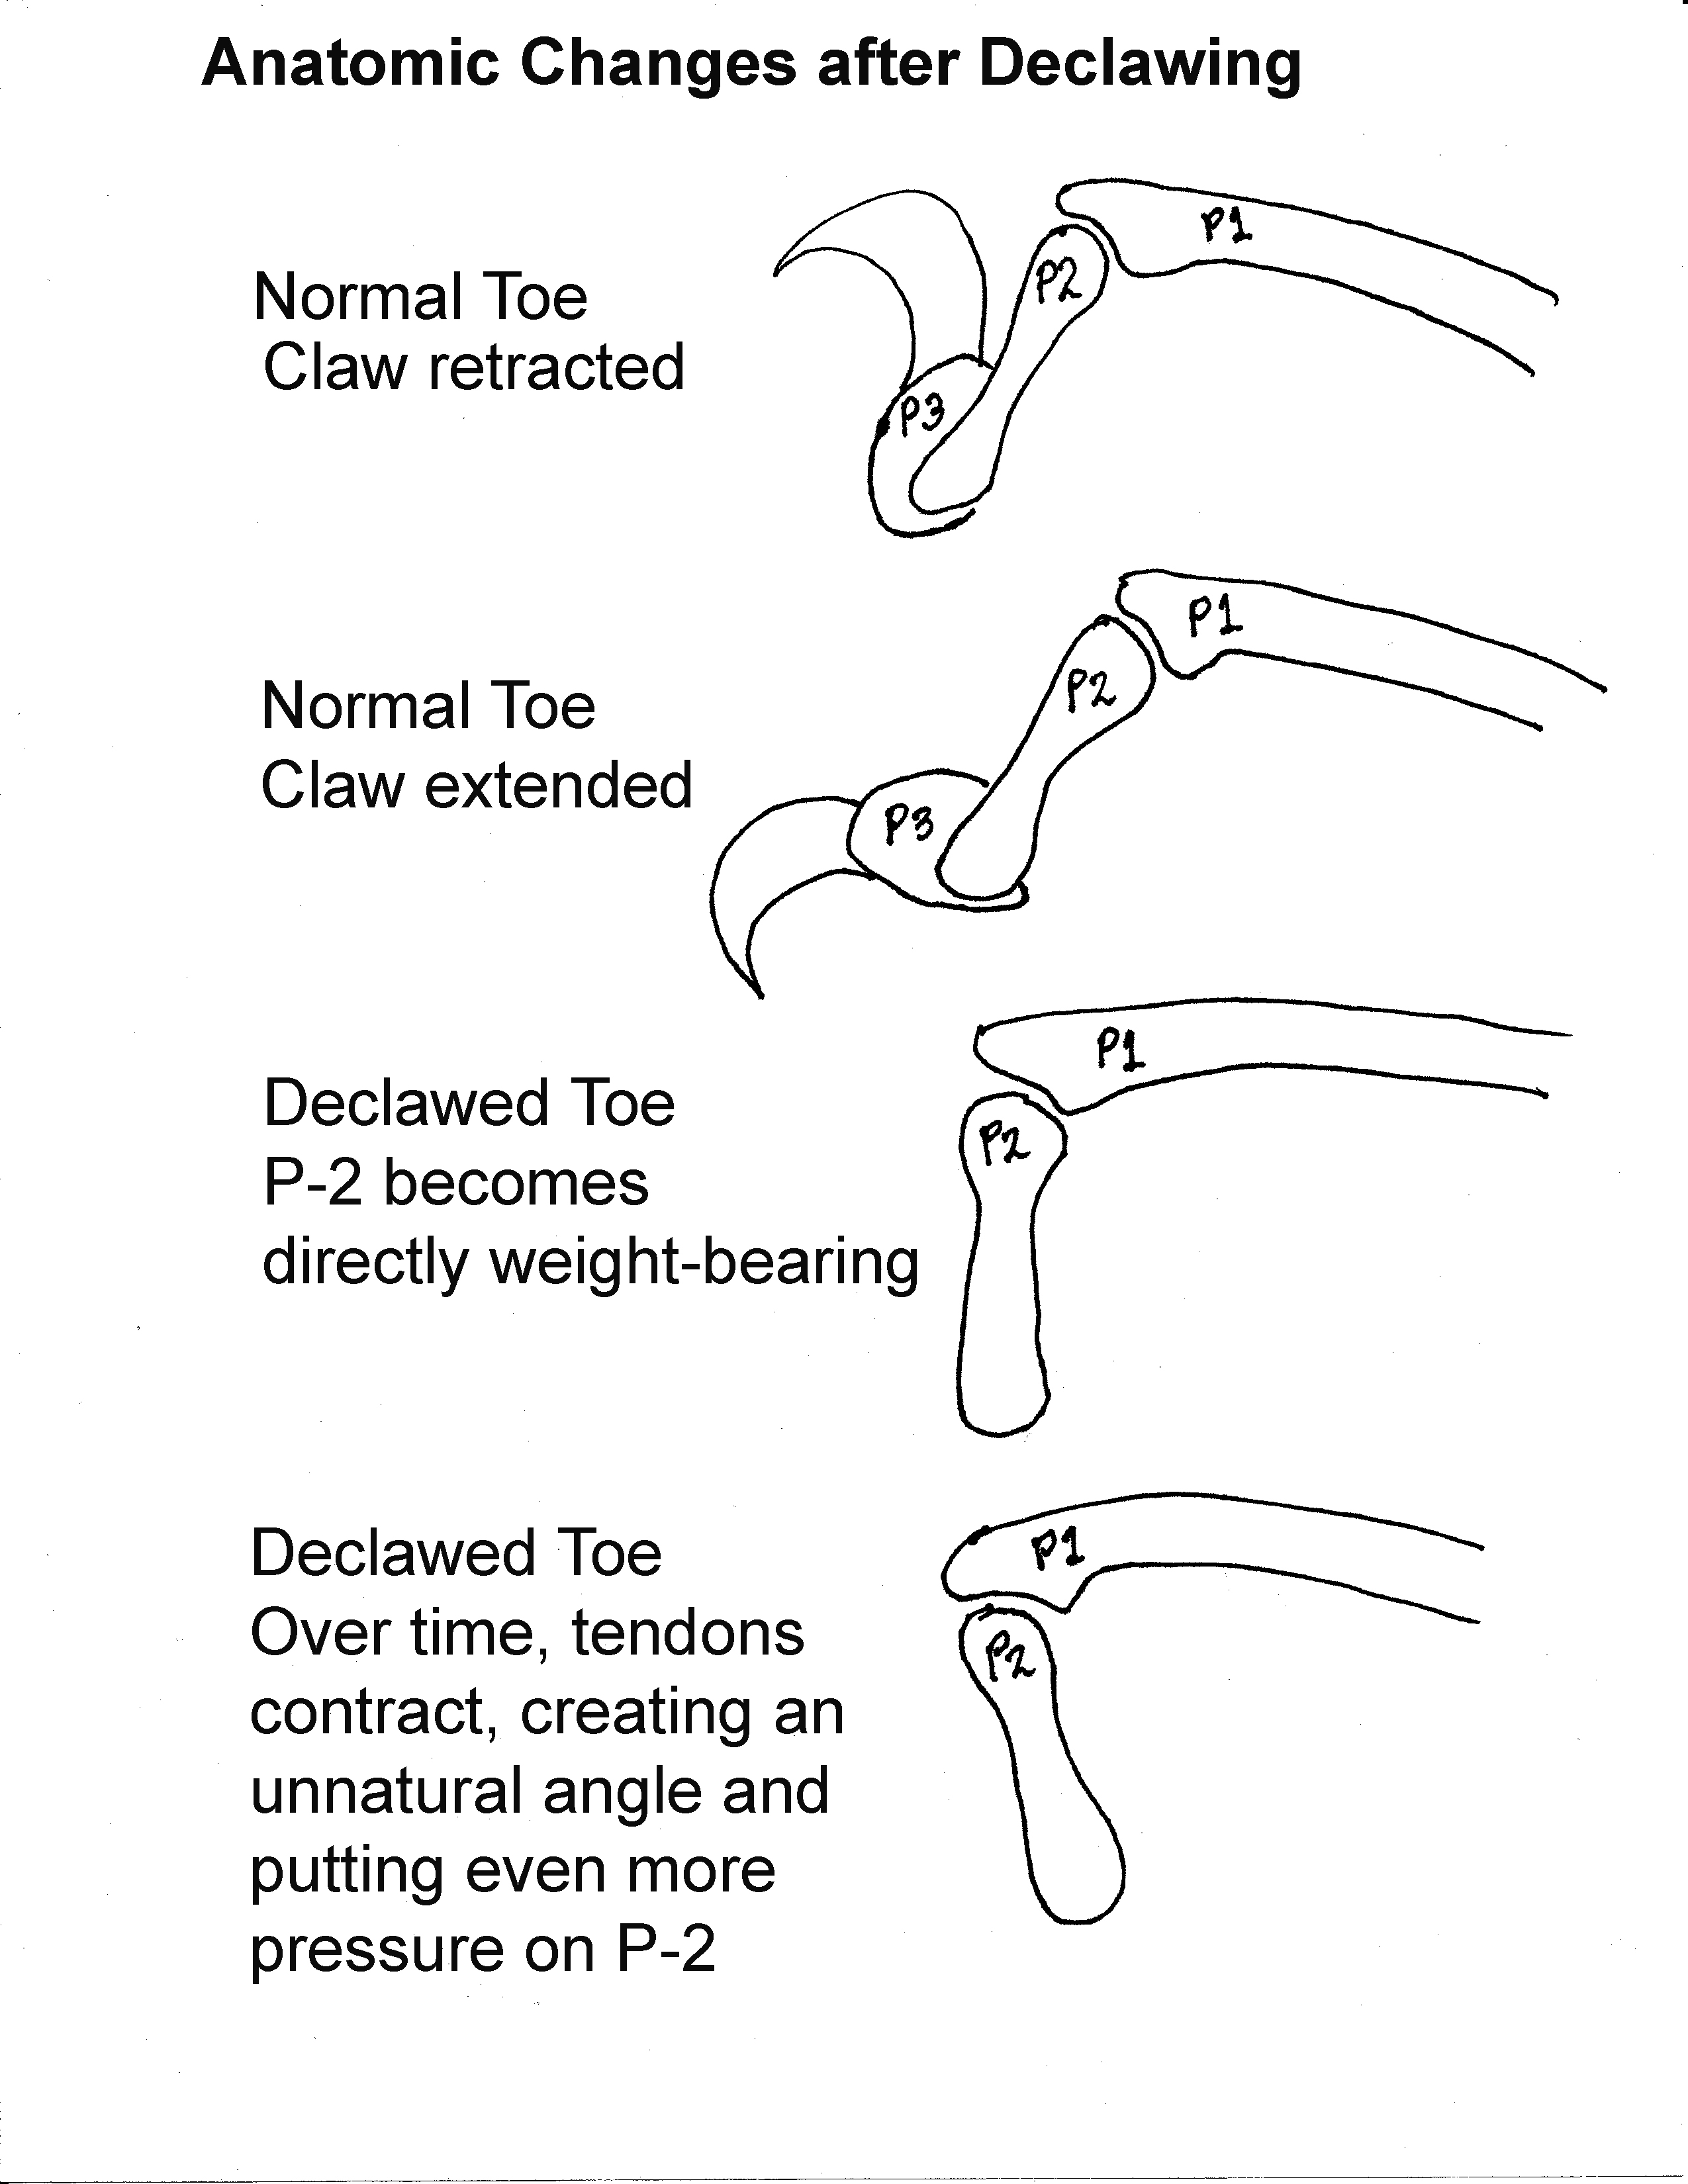 Clawed-vs-Declawed-Toes.jpg